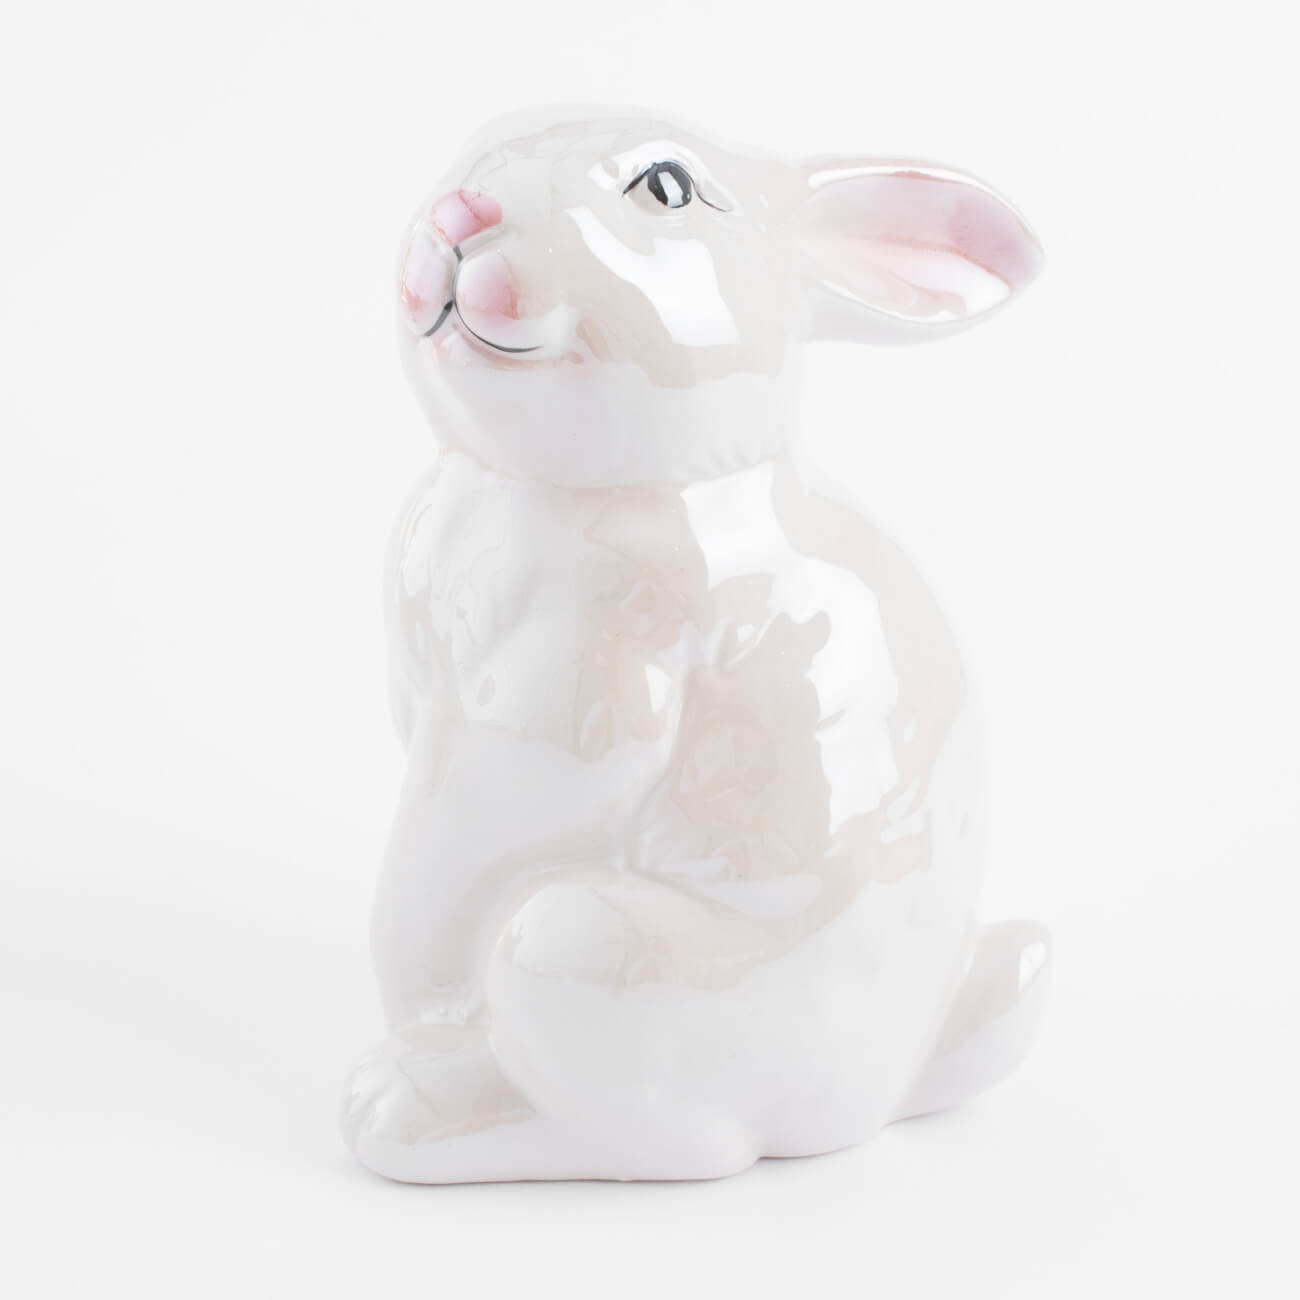 статуэтка 18 см керамика молочная кролик сидит easter blooming Статуэтка, 16 см, керамика, молочная, перламутр, Кролик, Easter